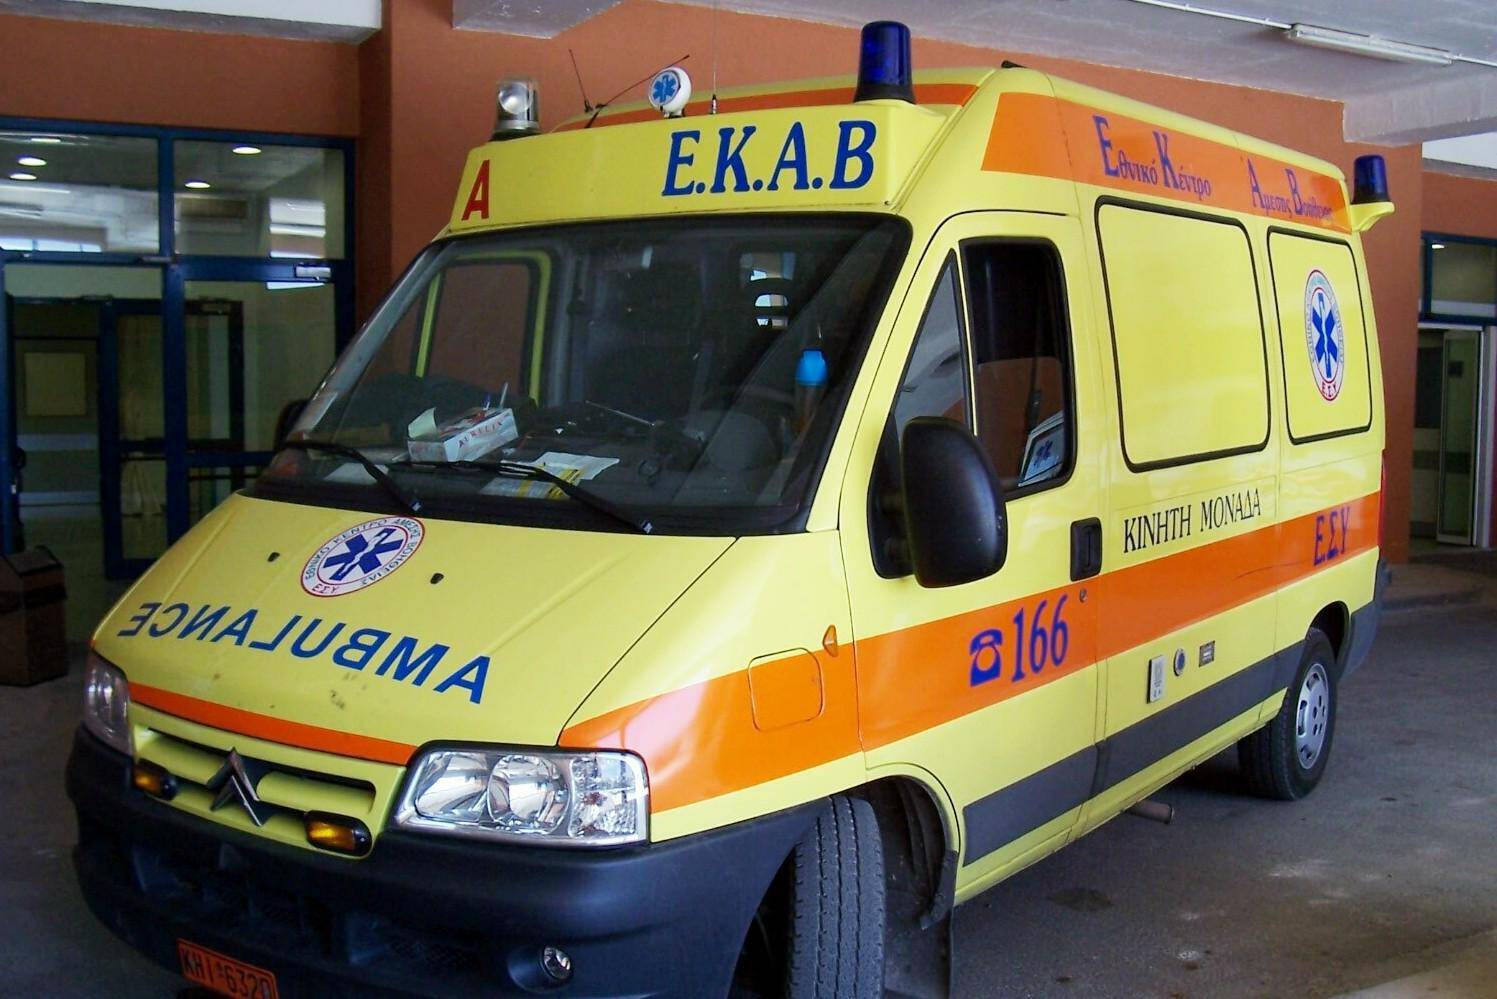 Αιτωλοακαρνανία: Όχημα παρέσυρε ανήλικο – Μεταφέρθηκε στο Πανεπιστημιακό νοσοκομείο Πατρών